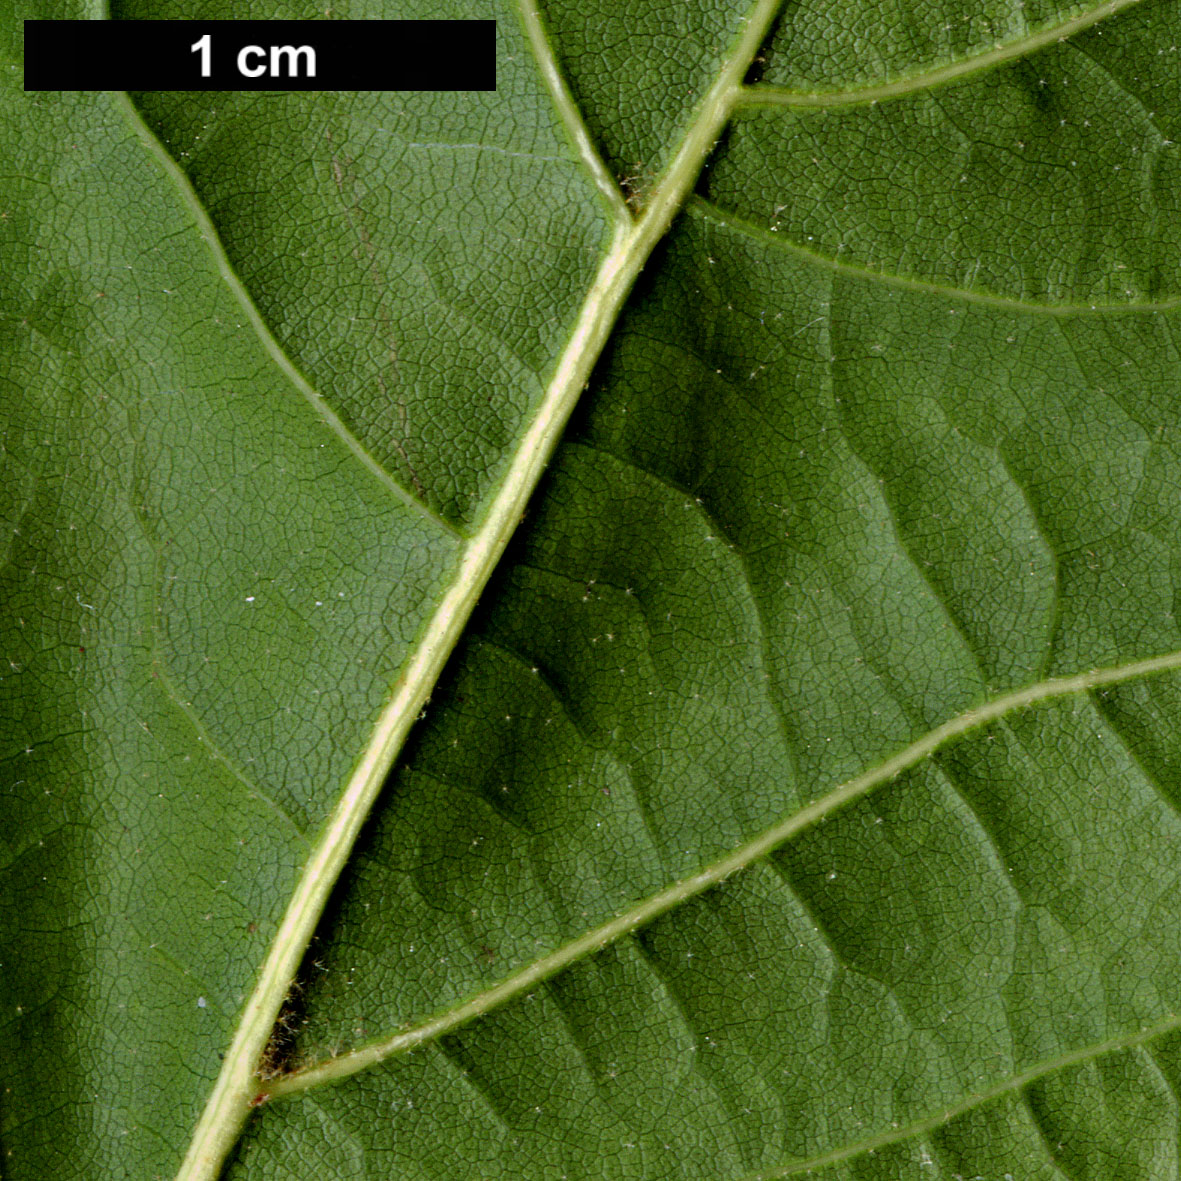 High resolution image: Family: Fagaceae - Genus: Quercus - Taxon: arkansana